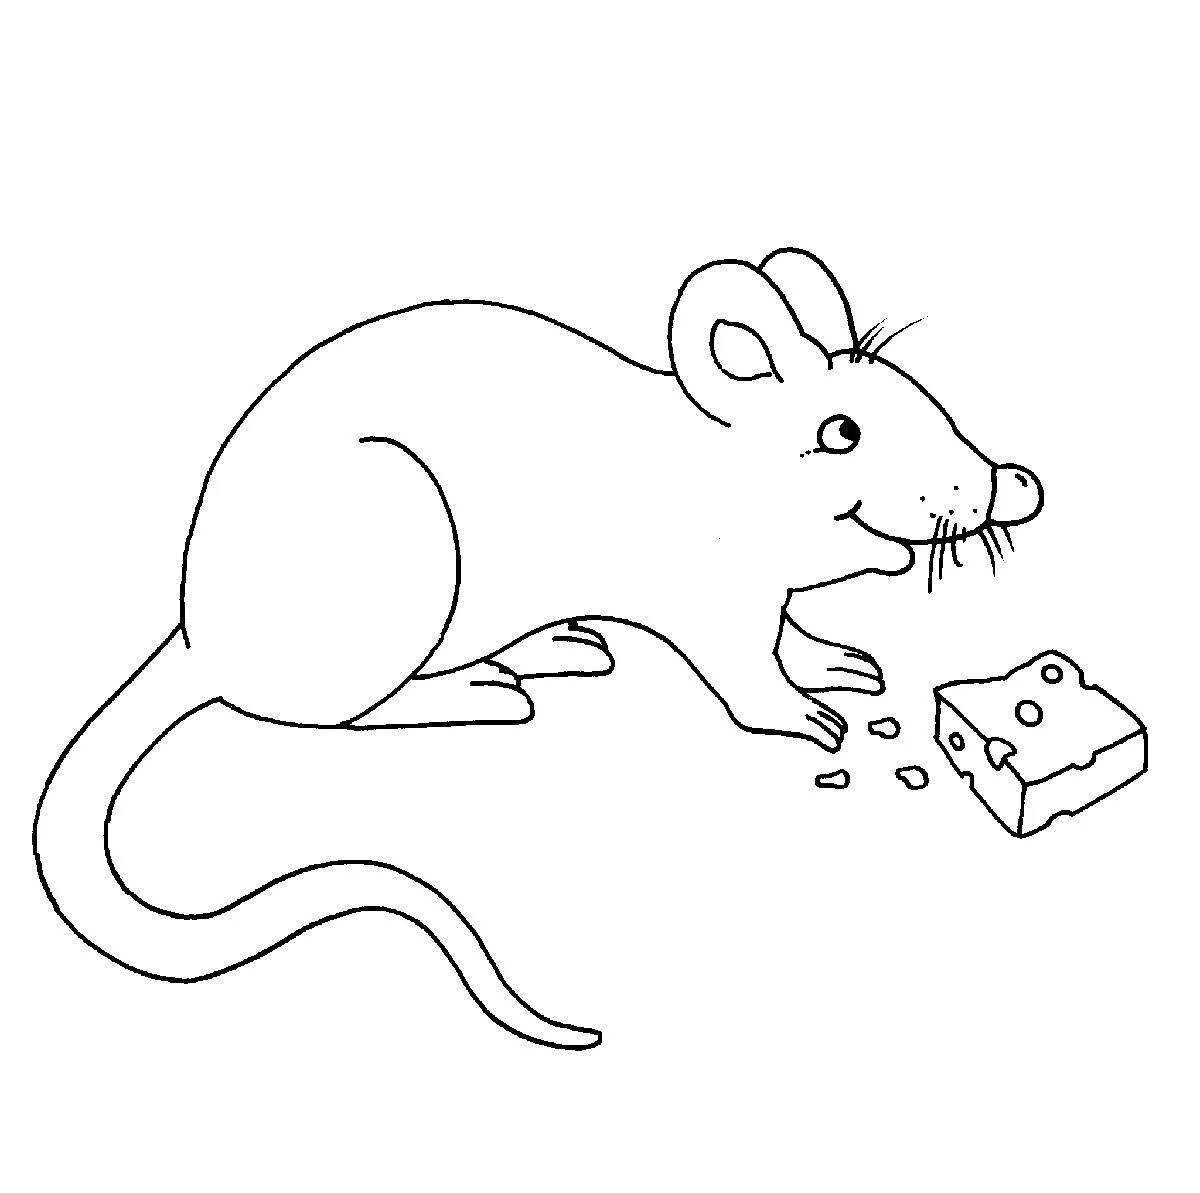 Игривая страница раскраски harvest mouse